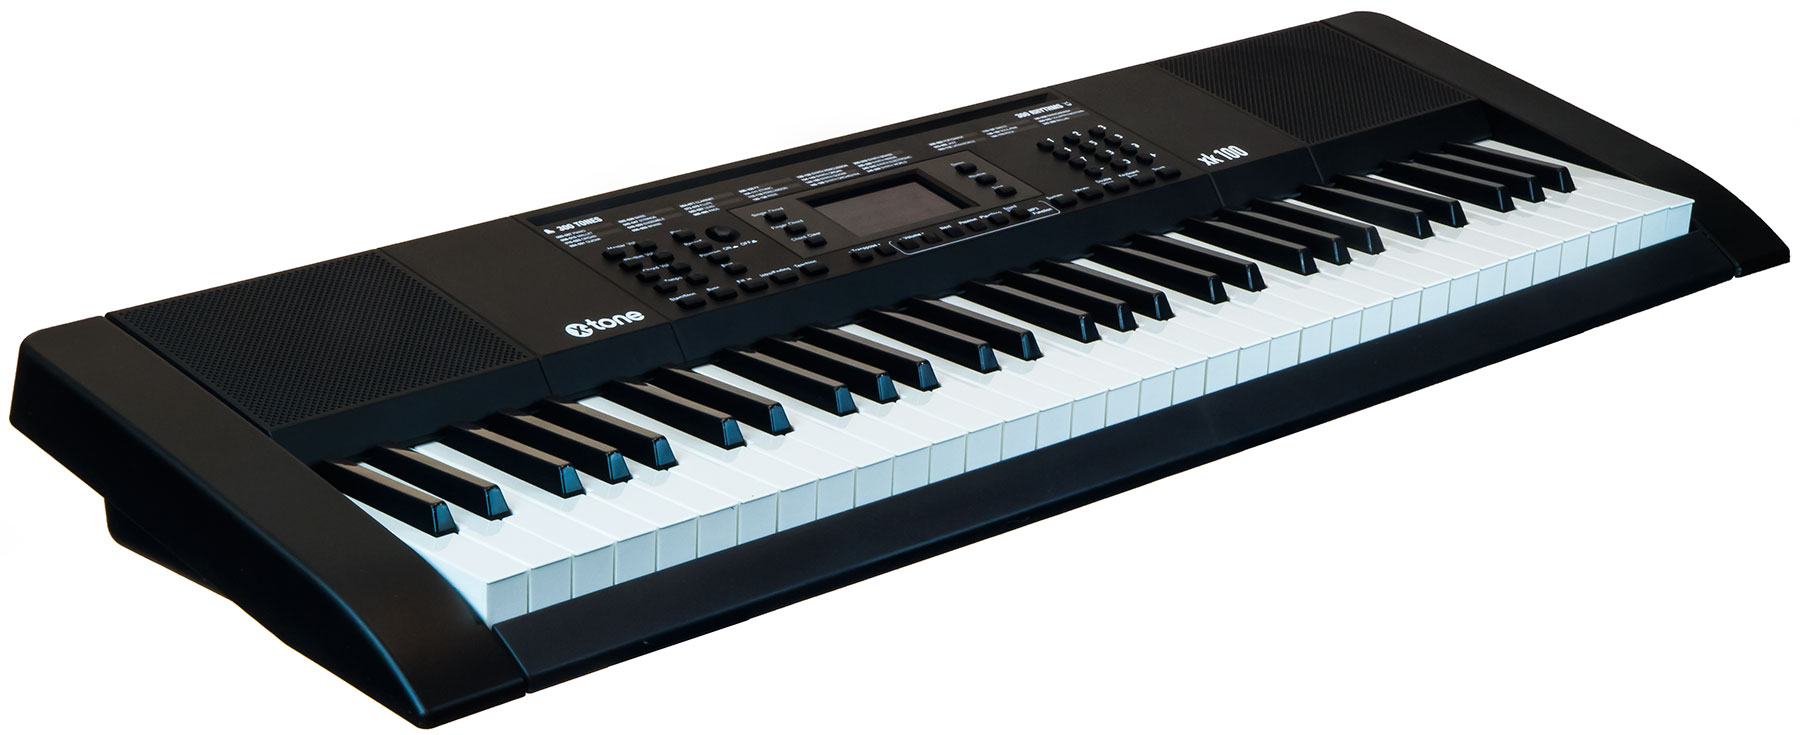 X-tone Xk100 Clavier Arrangeur - Entertainerkeyboard - Variation 1